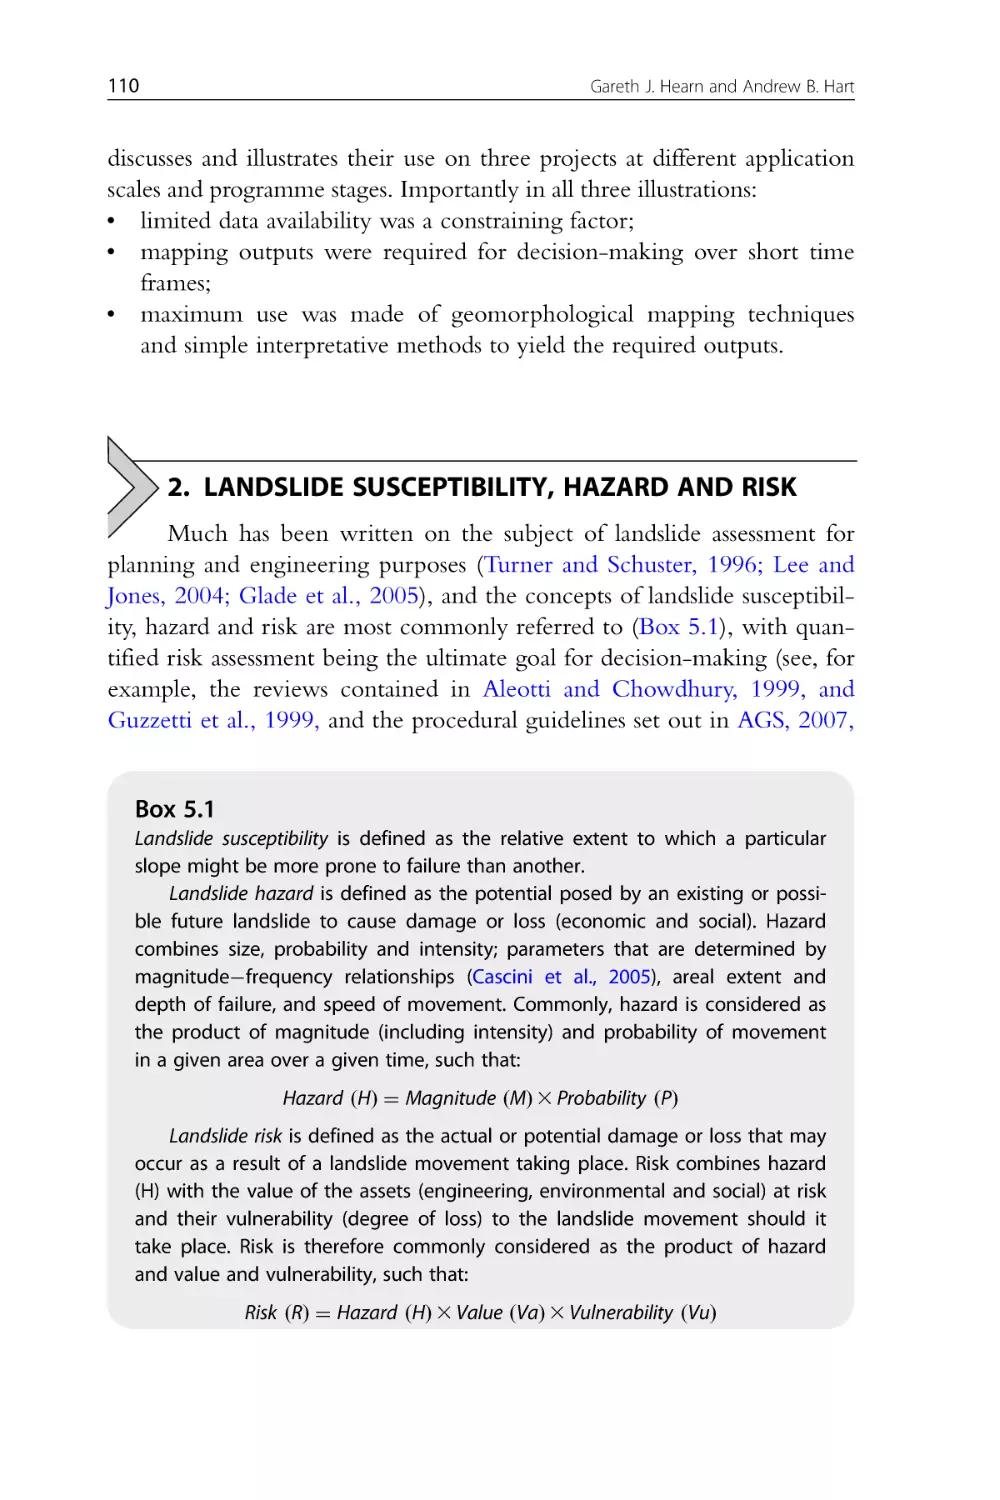 2. Landslide Susceptibility, Hazard and Risk